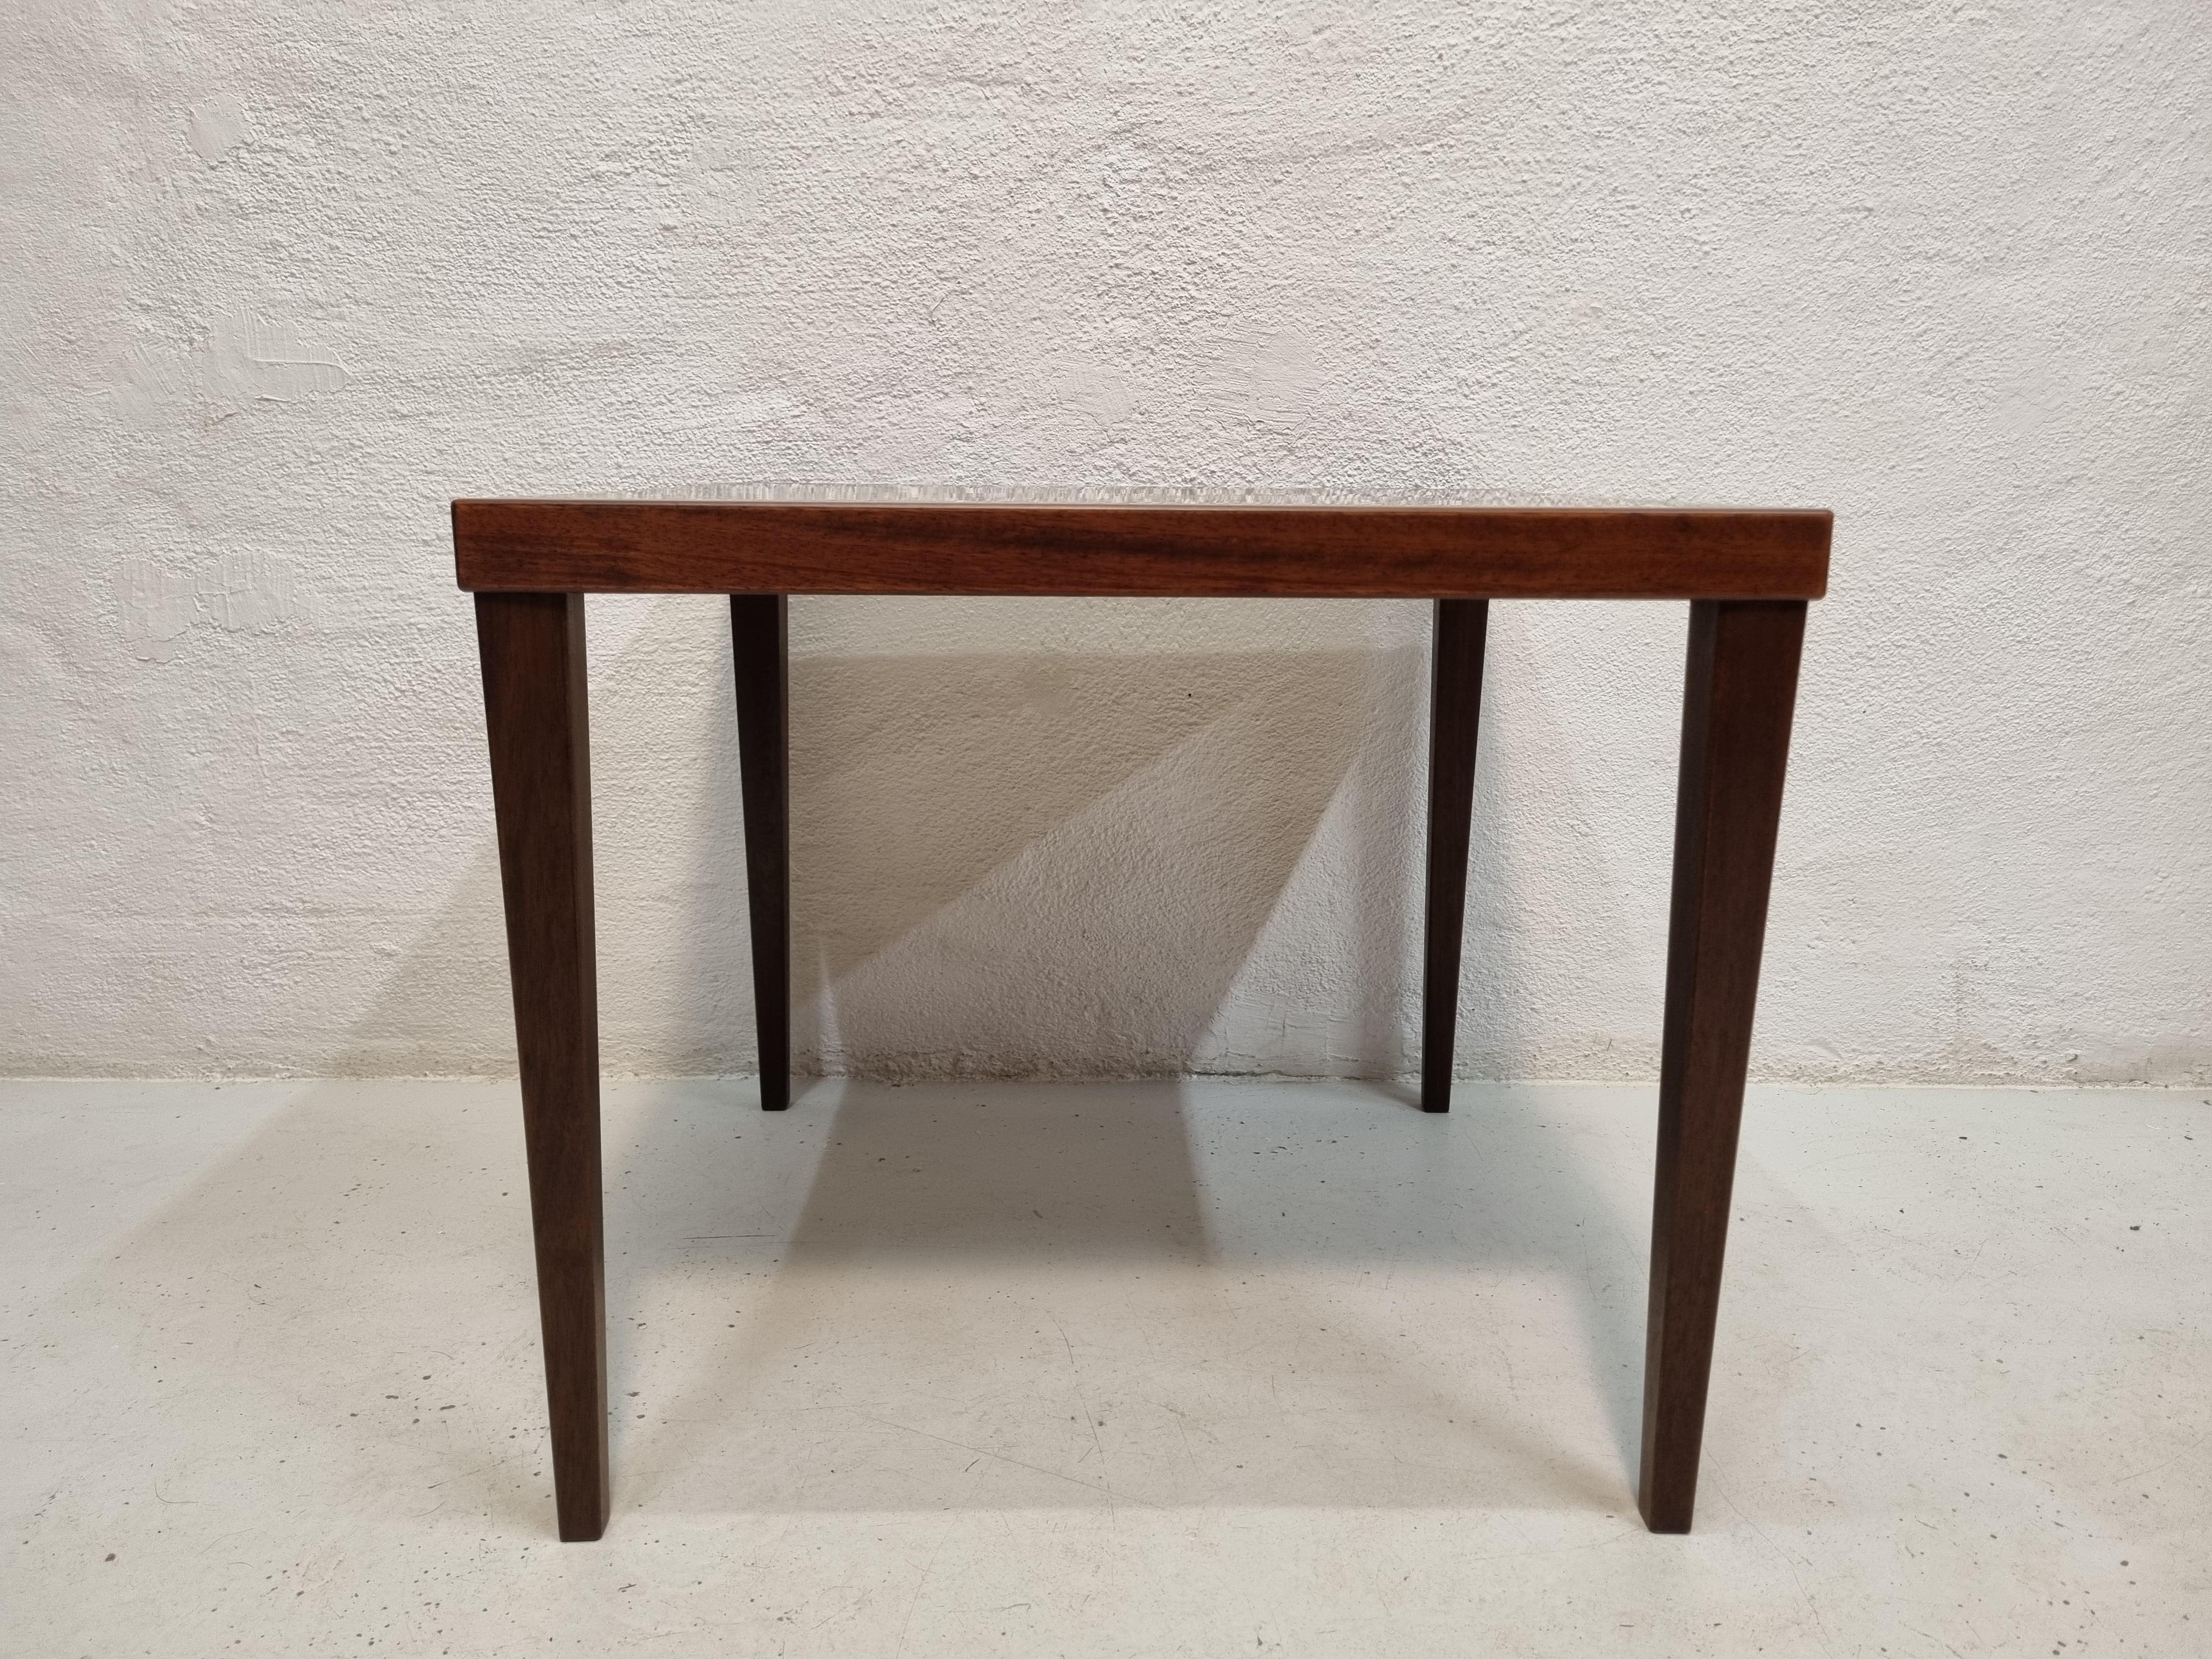 Quadratischer Beistelltisch aus Palisanderholz, kann auch ein kleiner Couchtisch sein.
Einfaches und schönes Design von einem dänischen Möbelhersteller.